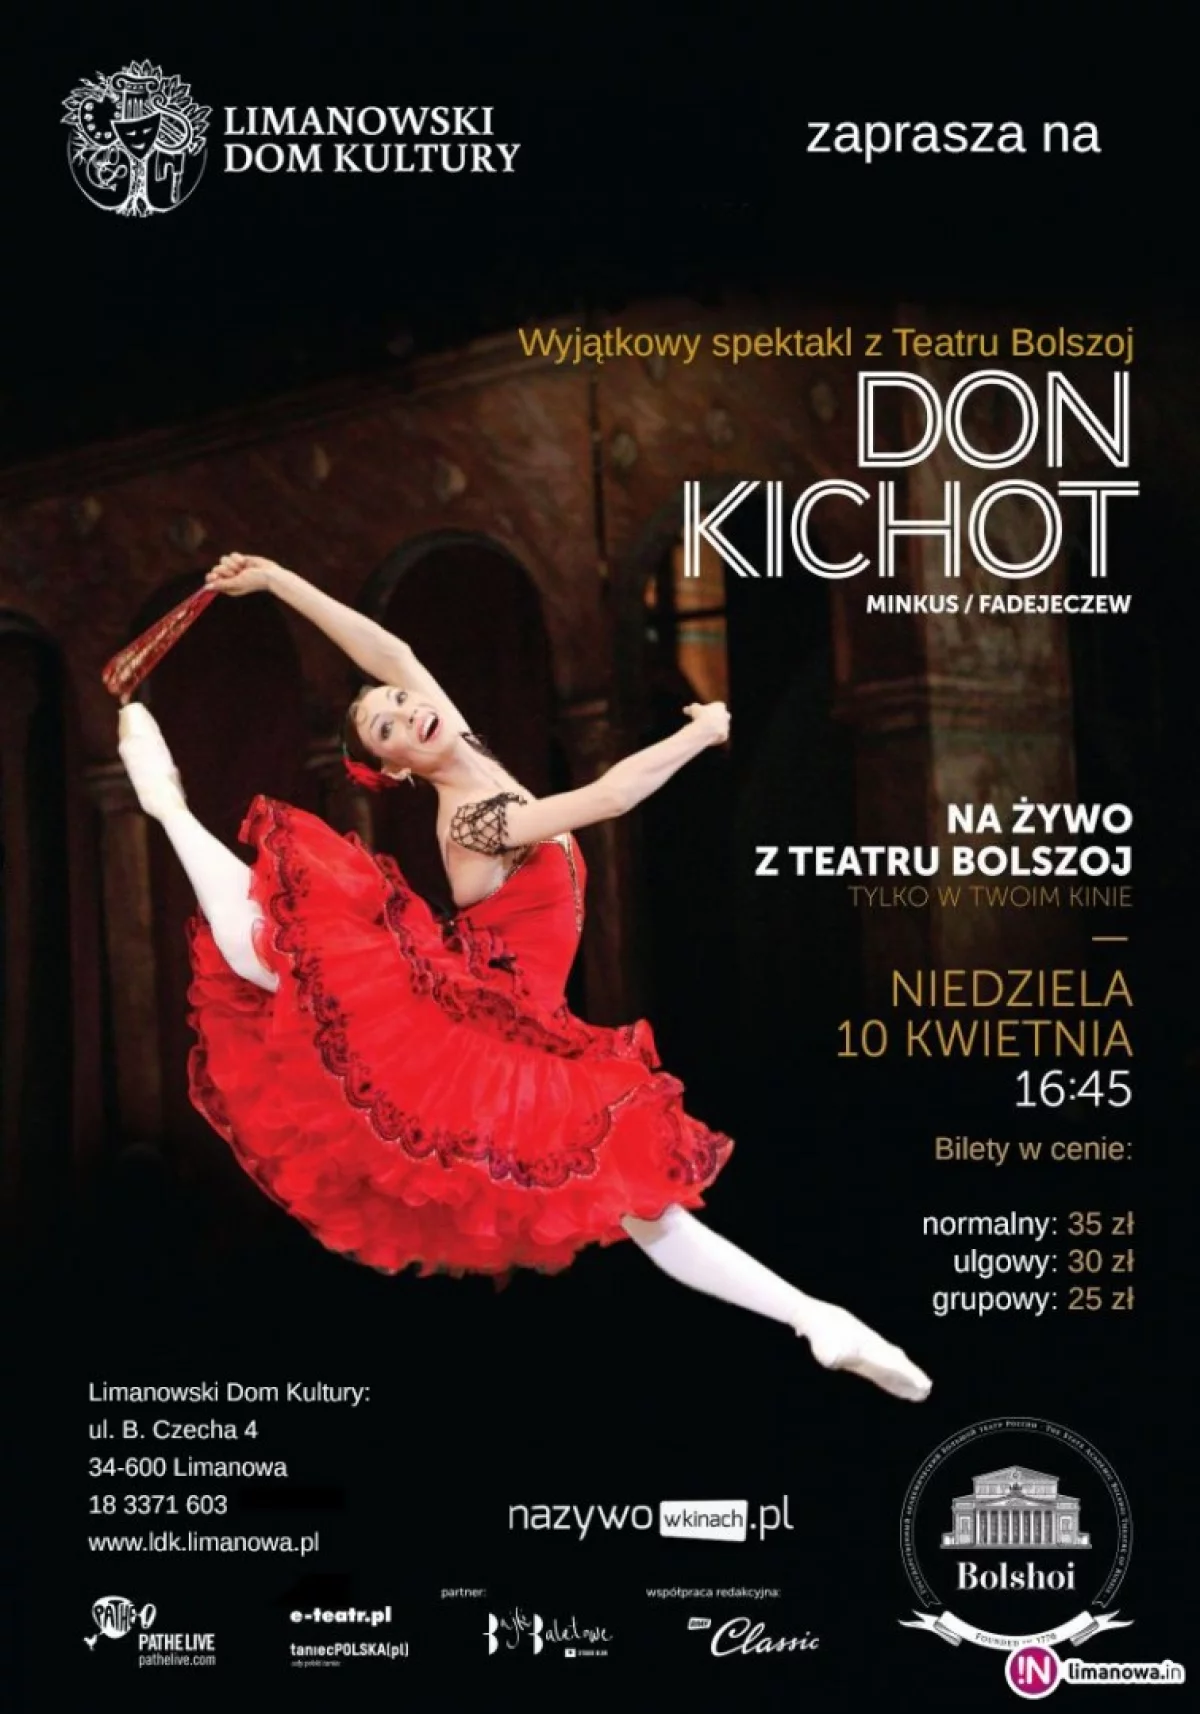 „DON KICHOT” - transmisja NA ŻYWO baletu z Moskwy 10 kwietnia w kinie Klaps!